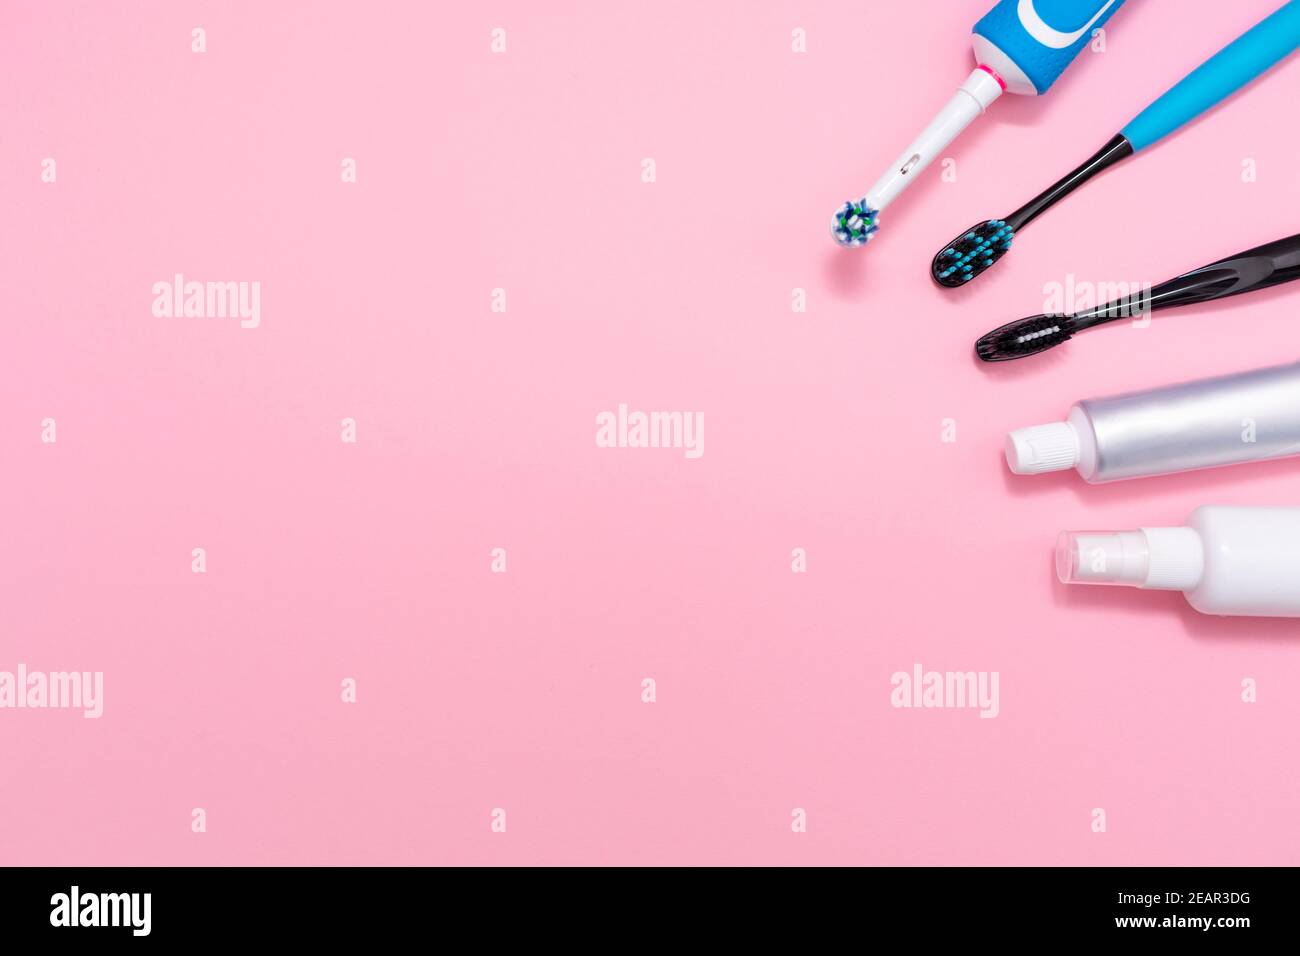 Une brosse à dents électrique et des brosses à dents en plastique, avec dentifrice et désodorisant pour la bouche. Fond rose. Copier l'espace. Concept d'hygiène du cavi oral Banque D'Images